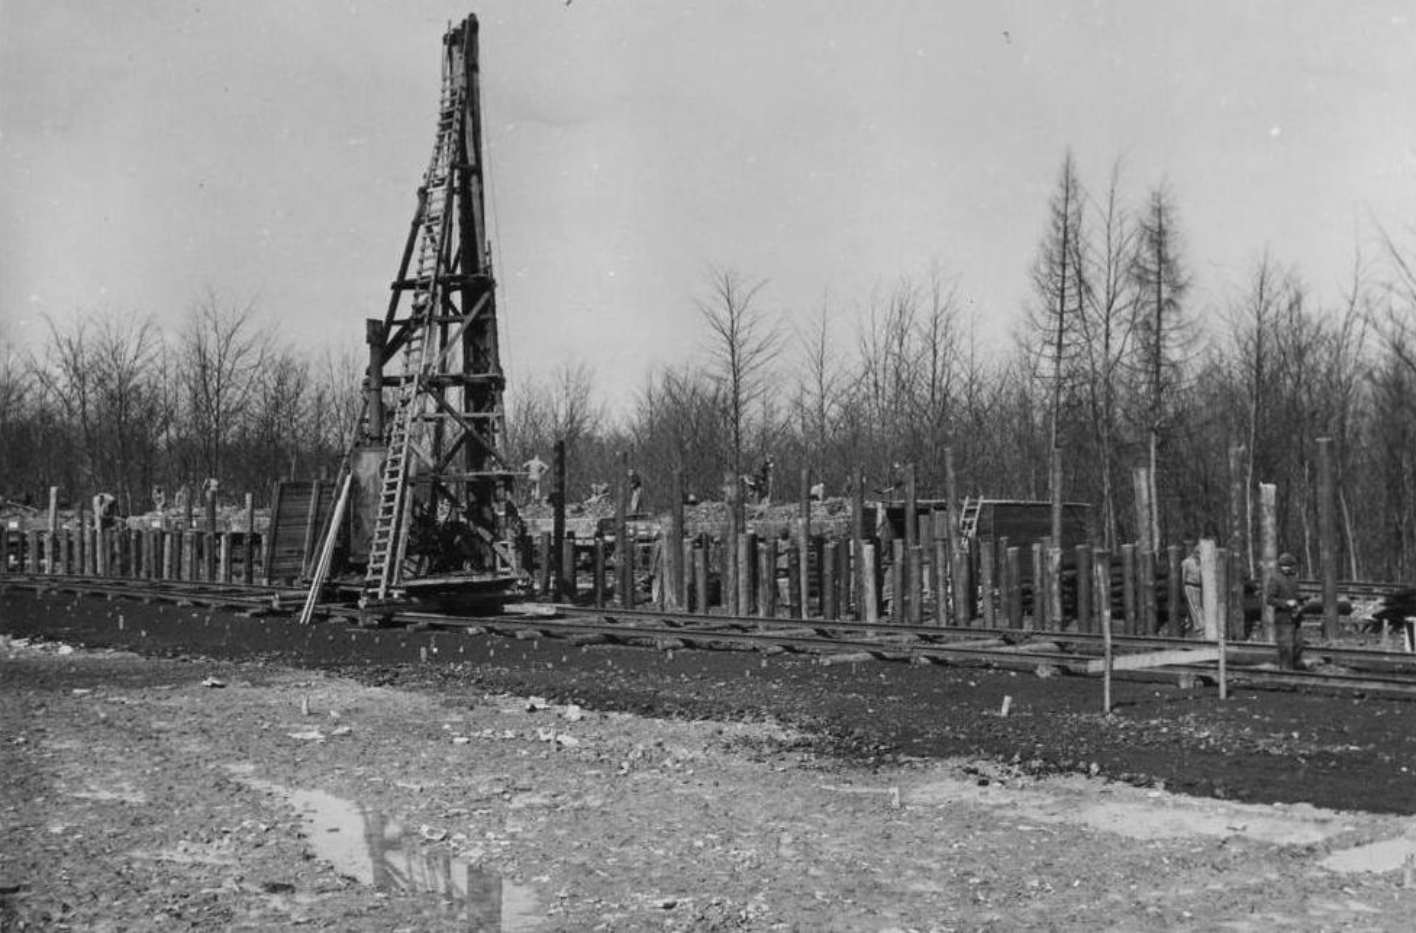 Häftlinge beim Bau der Bahnstation Buchenwald. Mitte Links ist ein hoher hölzerner Gerüstturm auf dem Gleis zu sehen.